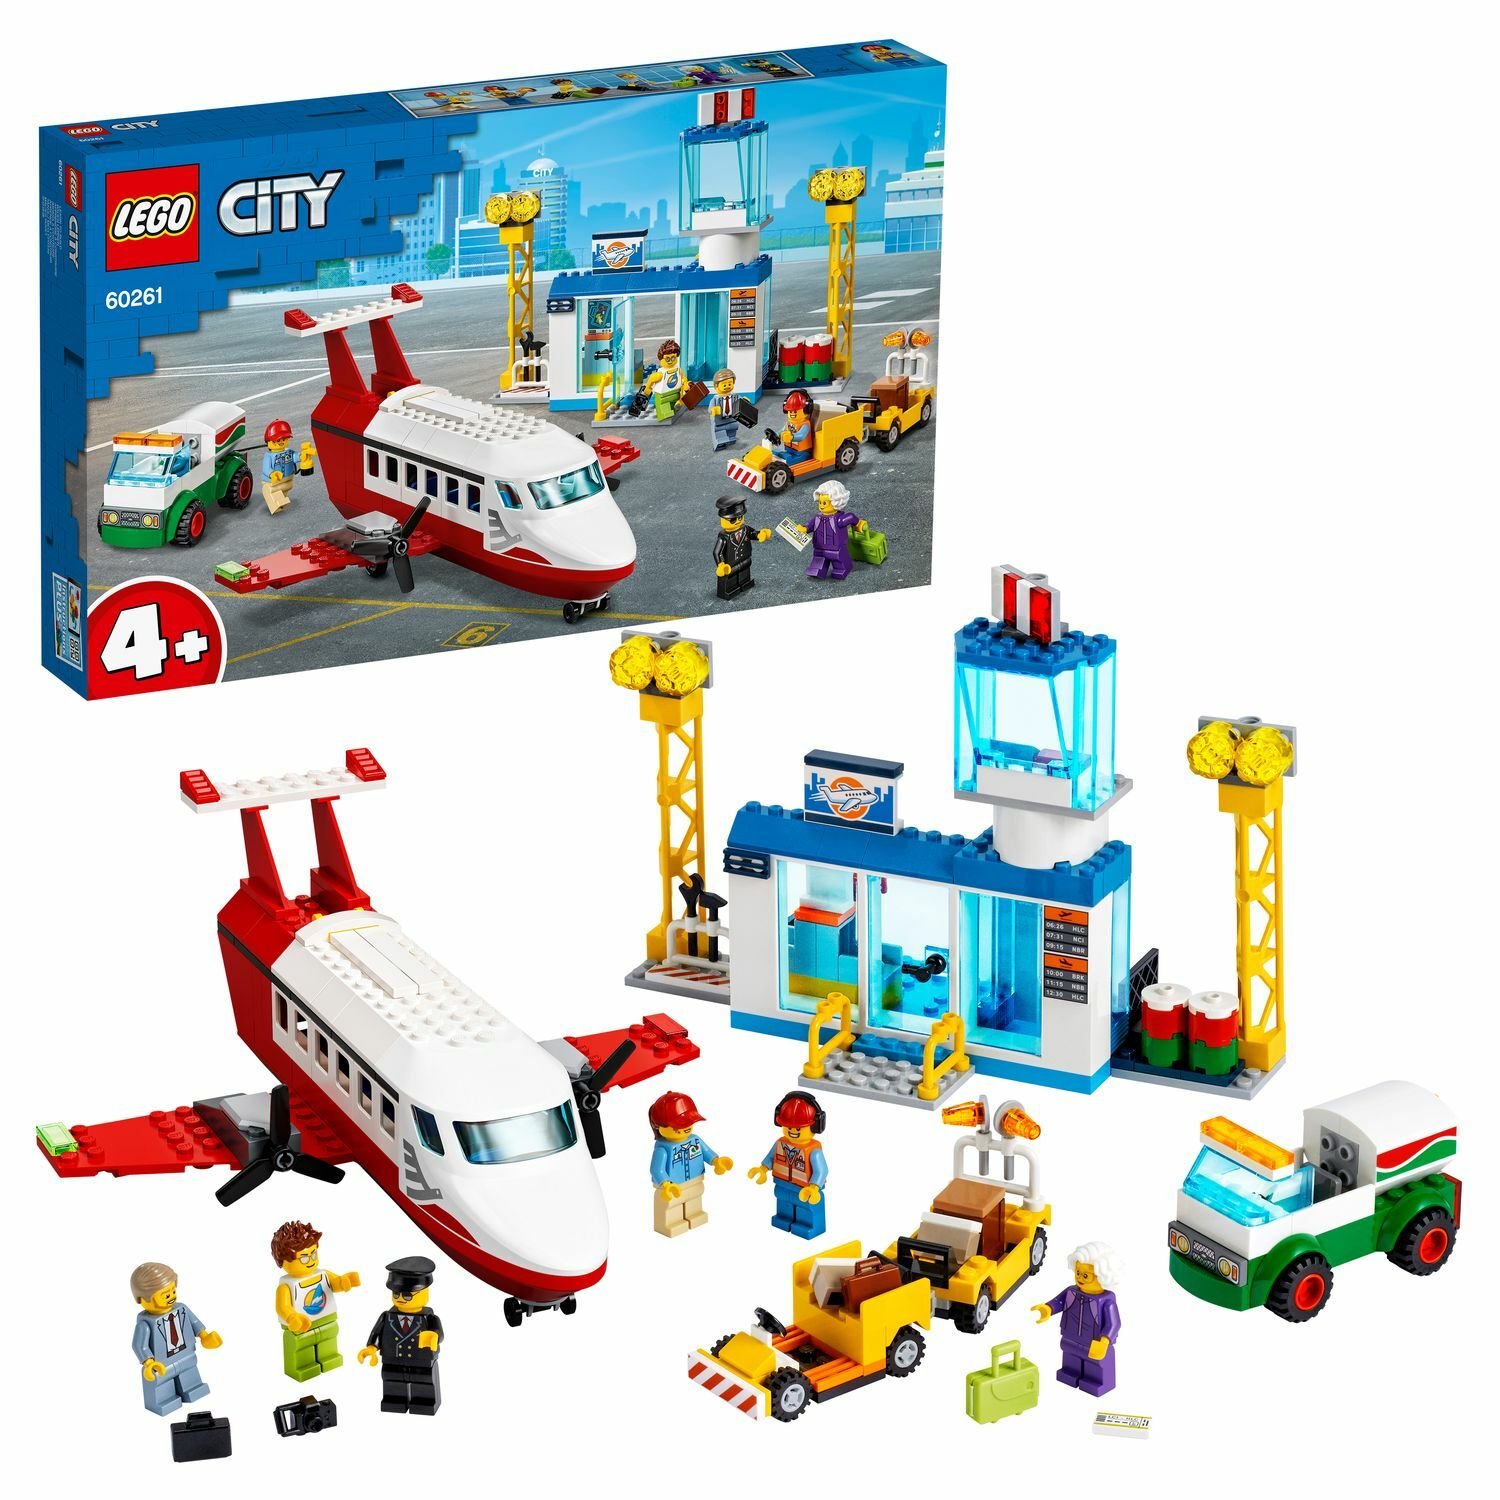 LEGO City 60261 Airport Городской аэропорт - Заинск 